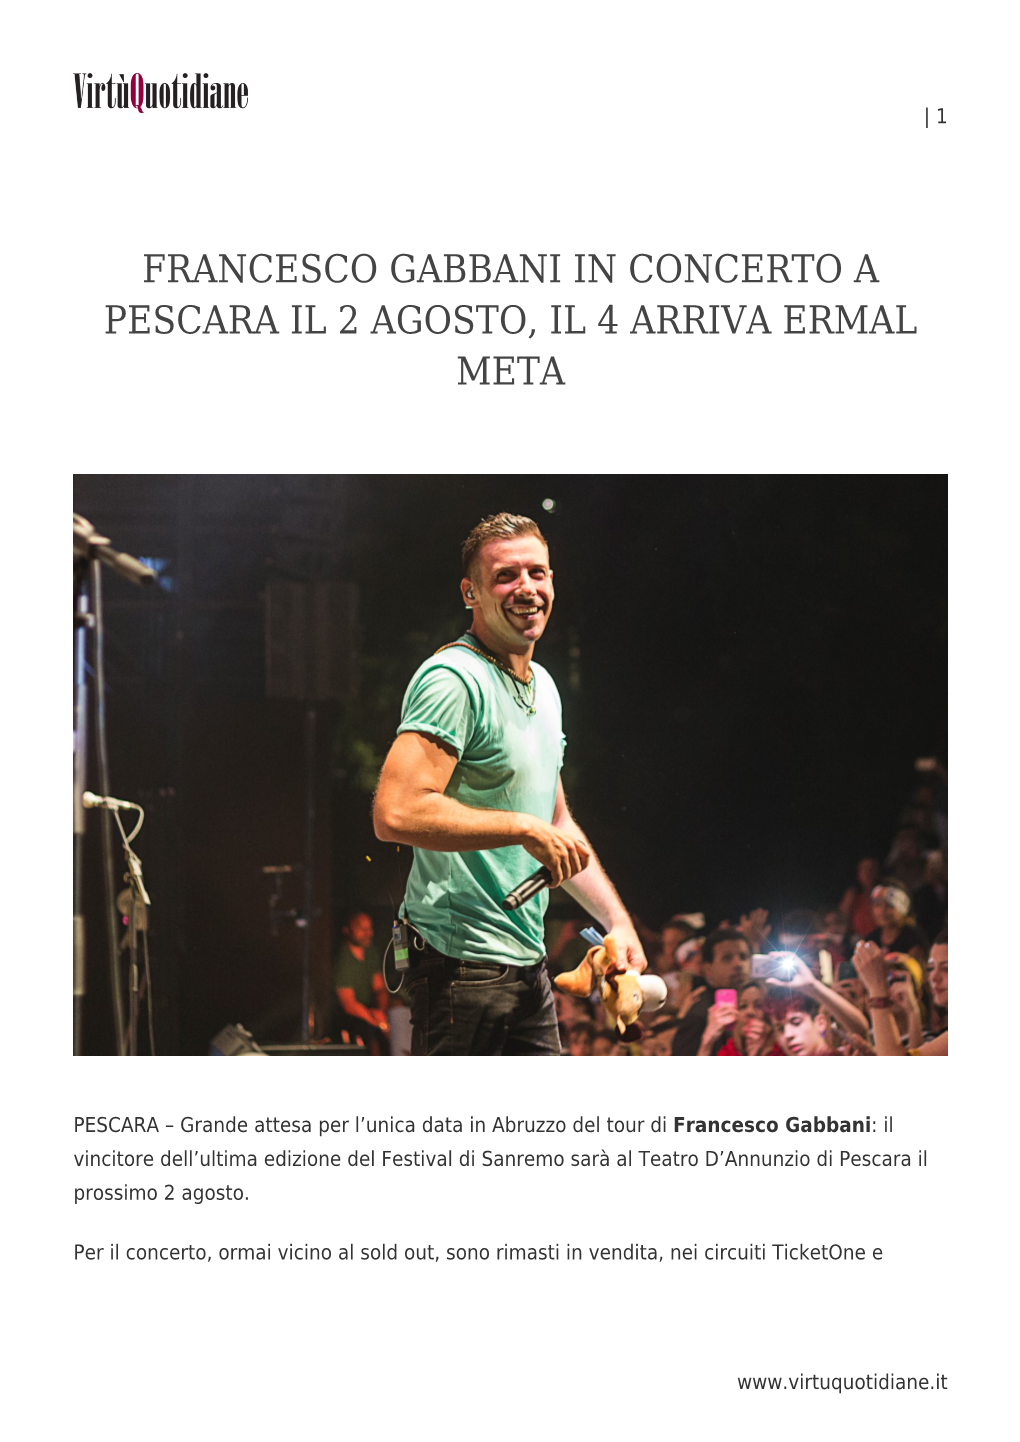 Francesco Gabbani in Concerto a Pescara Il 2 Agosto, Il 4 Arriva Ermal Meta